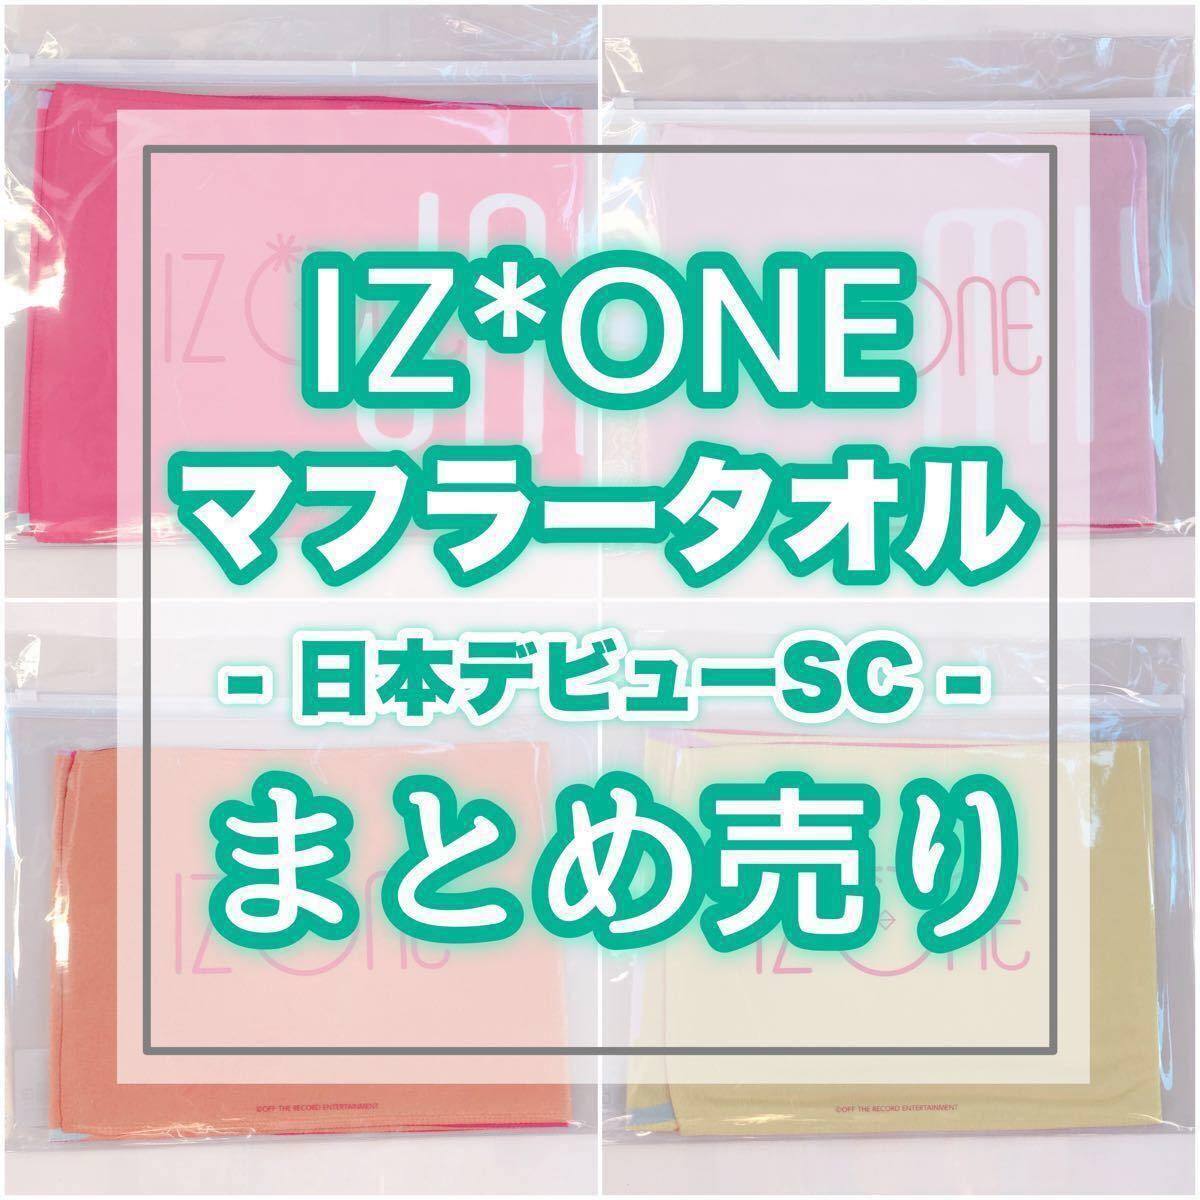 IZ*ONE 日本デビューSC マフラータオル 8枚セット